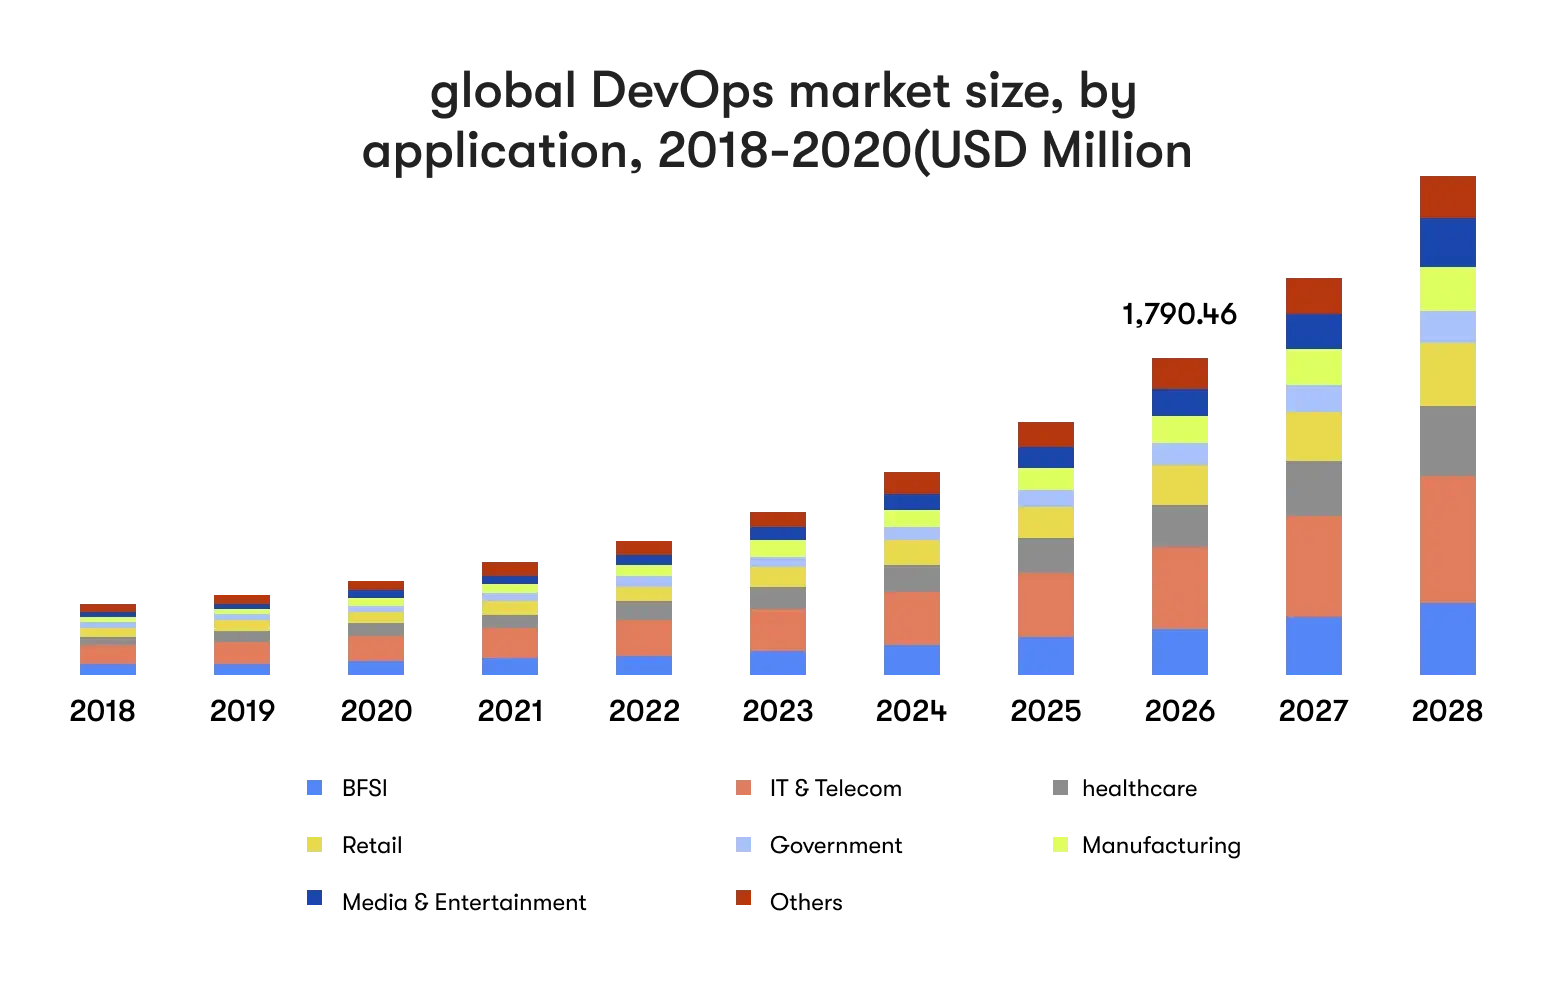 Global devops market size by application illustration